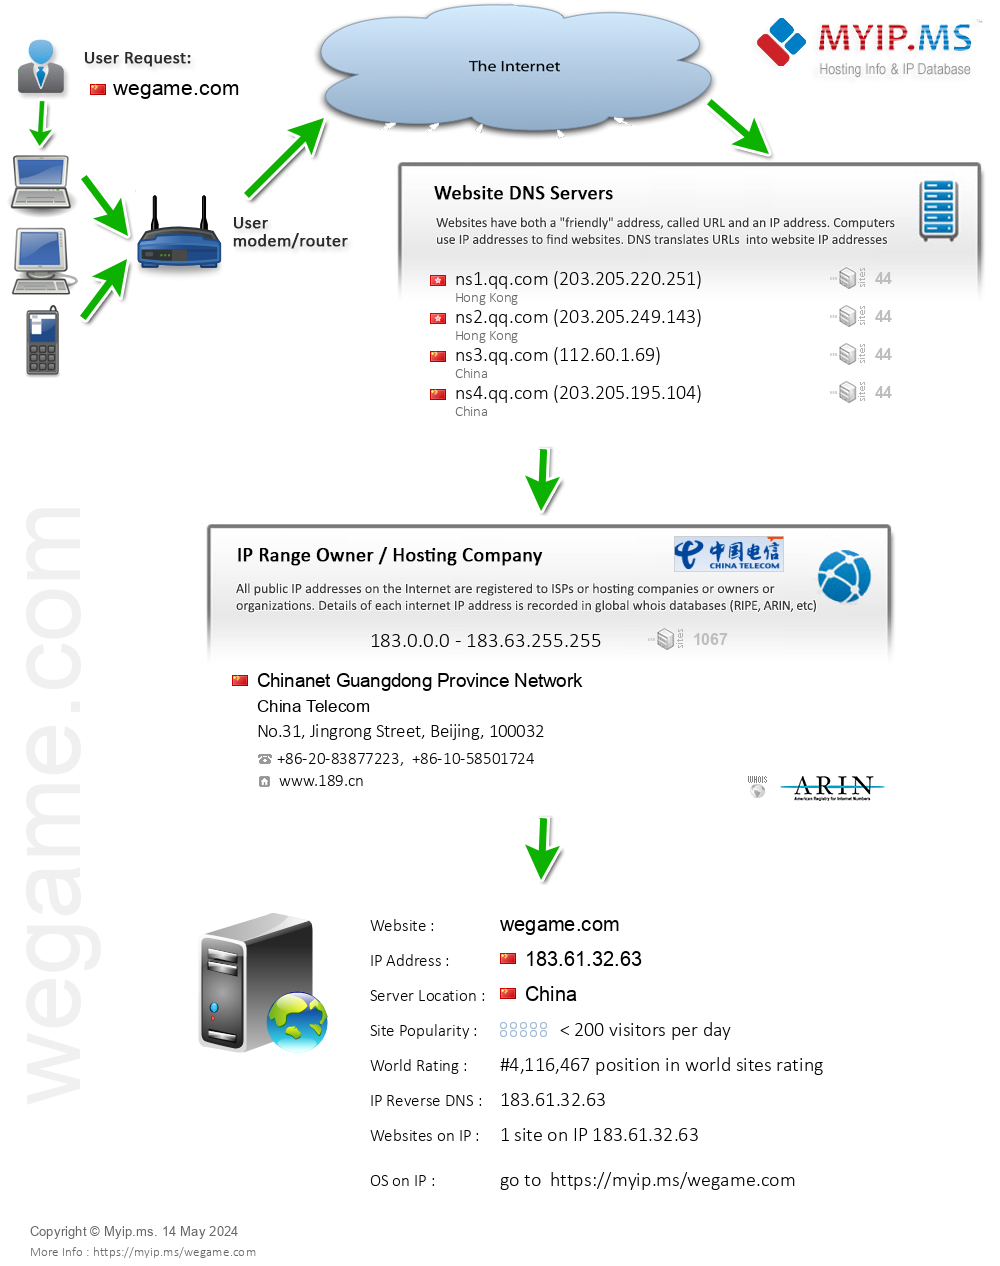 Wegame.com - Website Hosting Visual IP Diagram